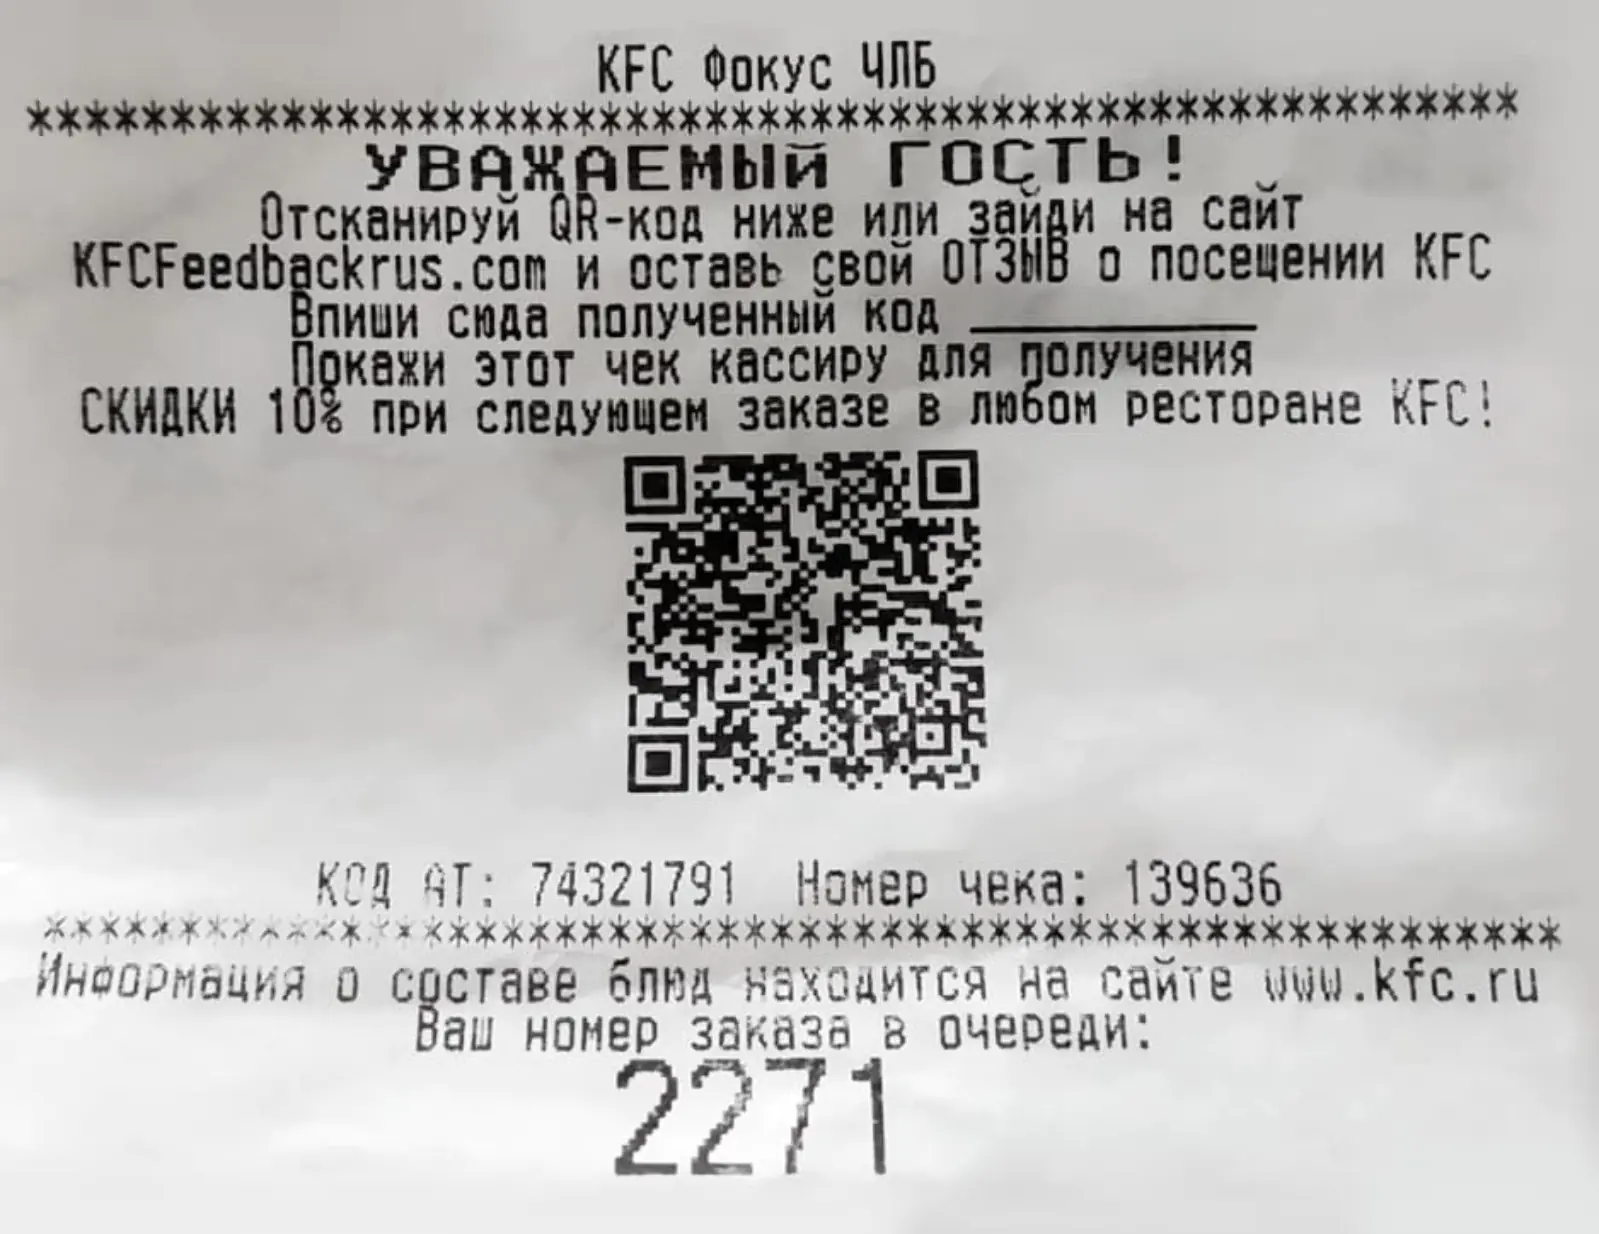 KFC размещает на чеке предложение оставить отзыв за скидку на следующий заказ